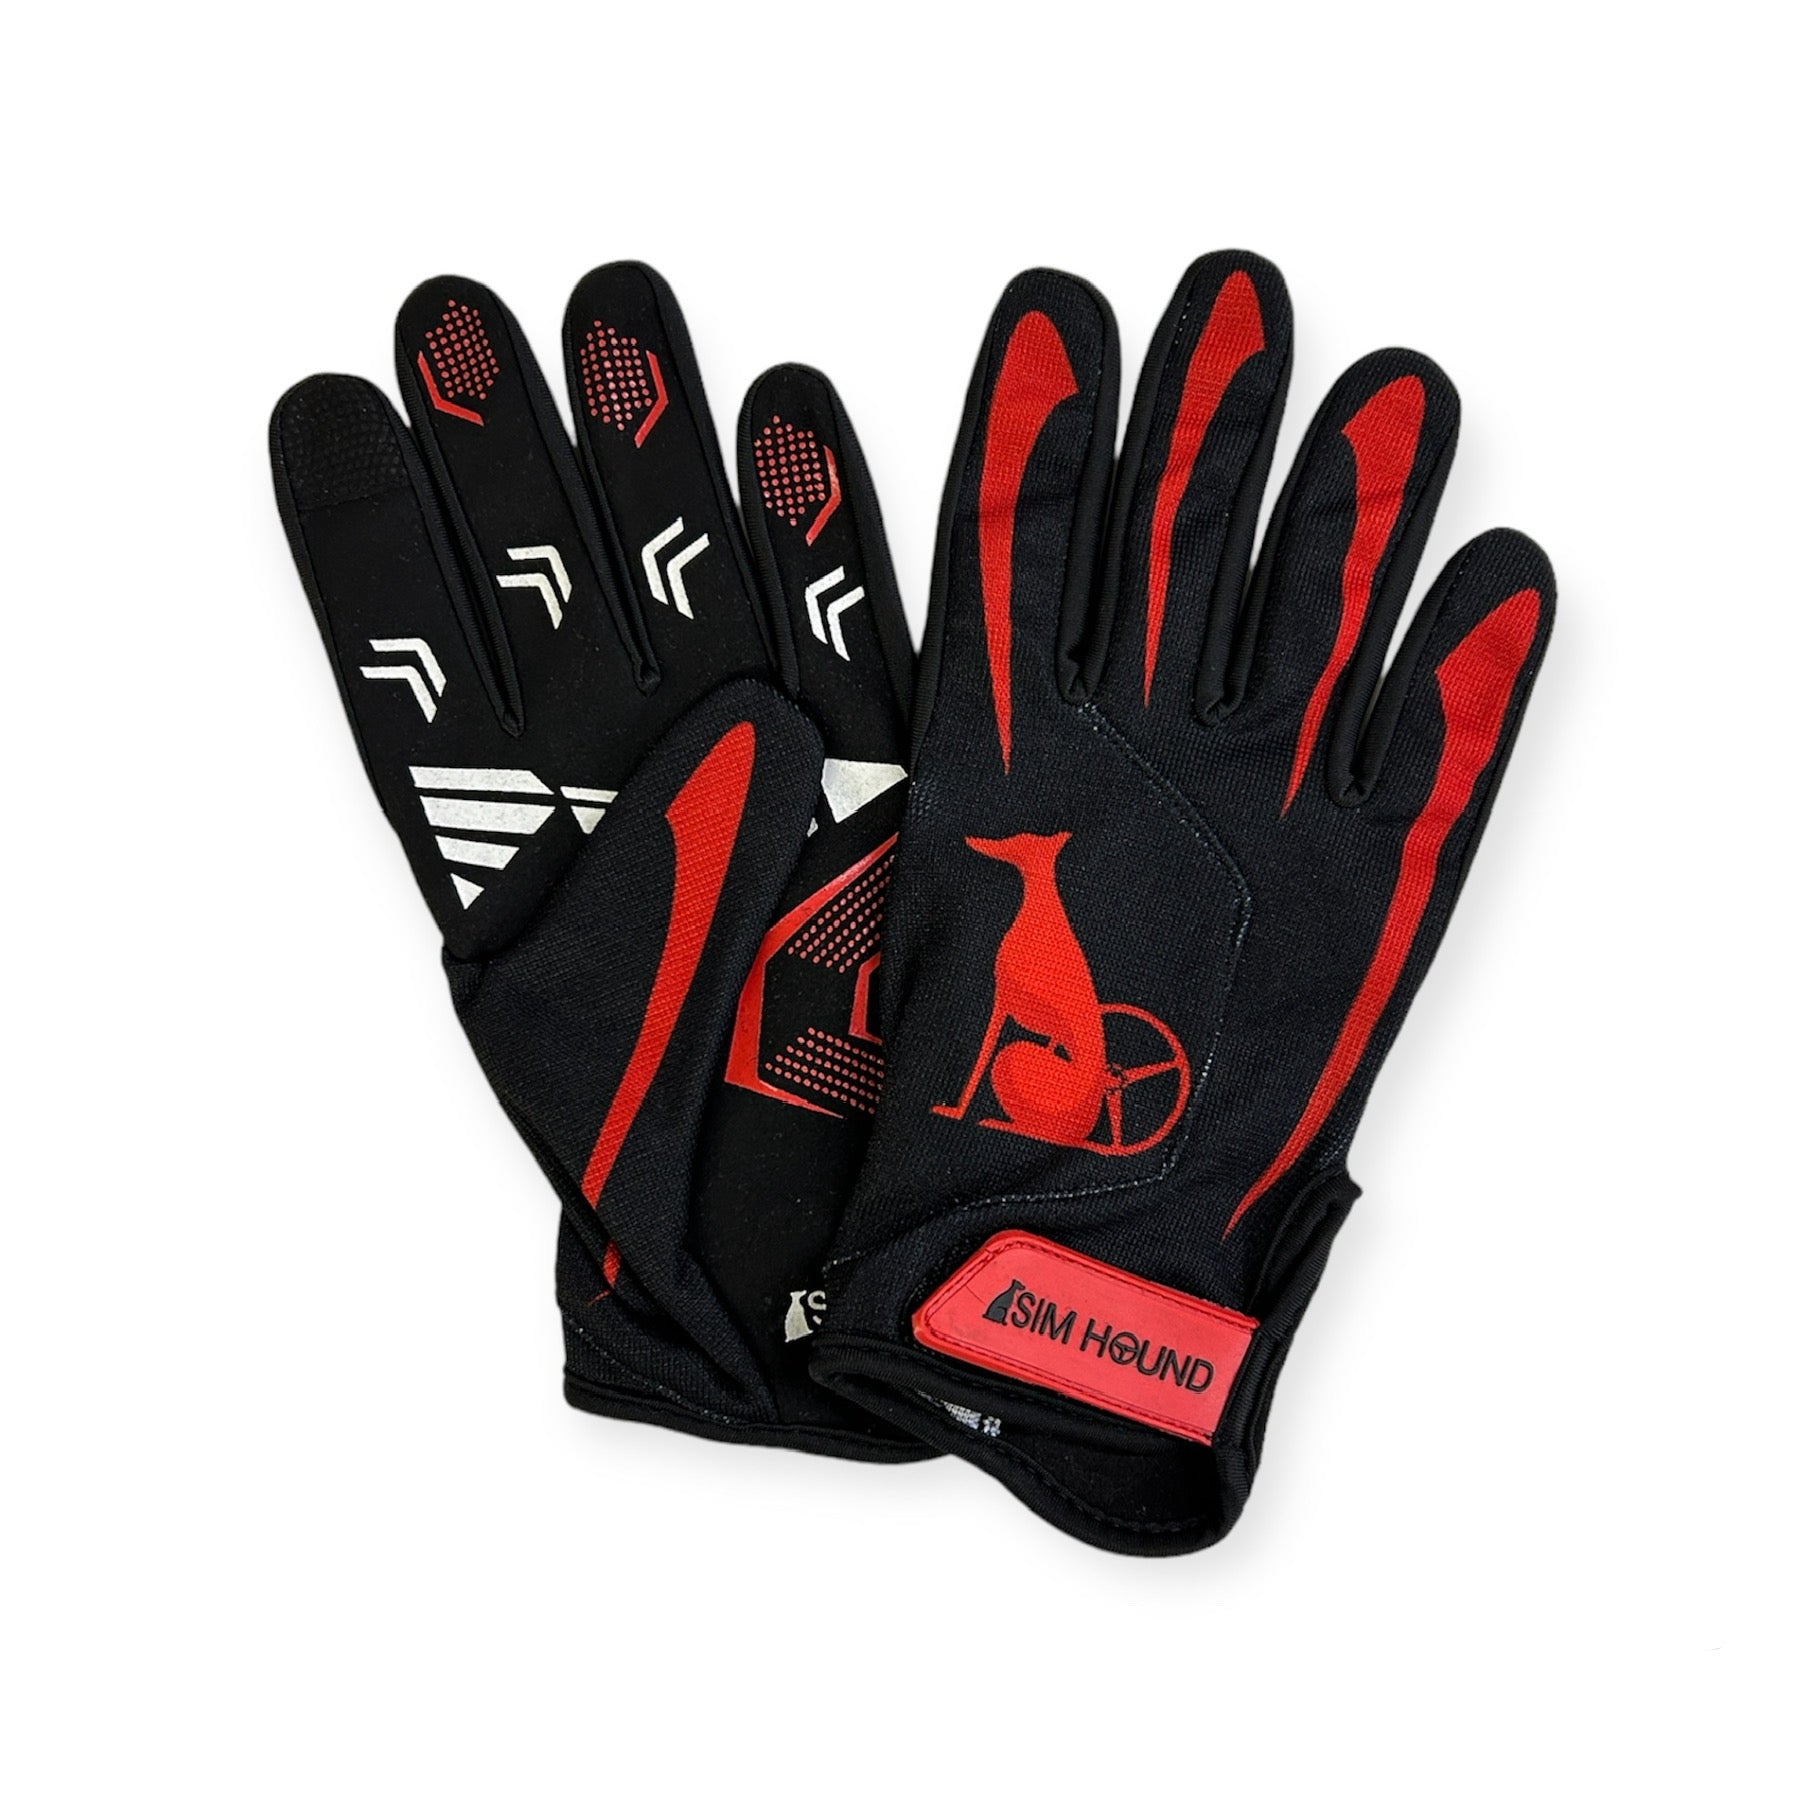 Sim Hound Gloves - Black & Red *Limited Edition*